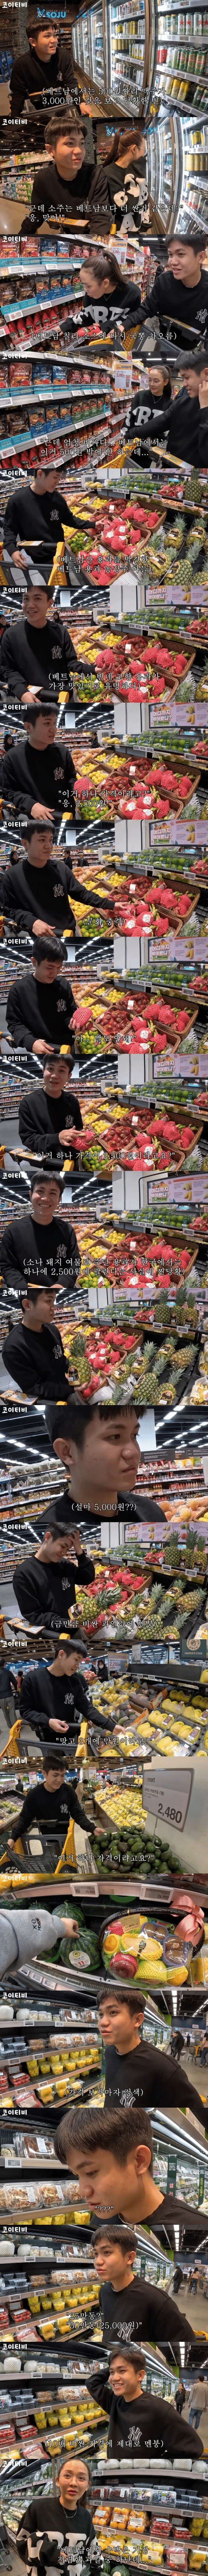 한국 과일 가격에 화들짝 놀란 베트남인